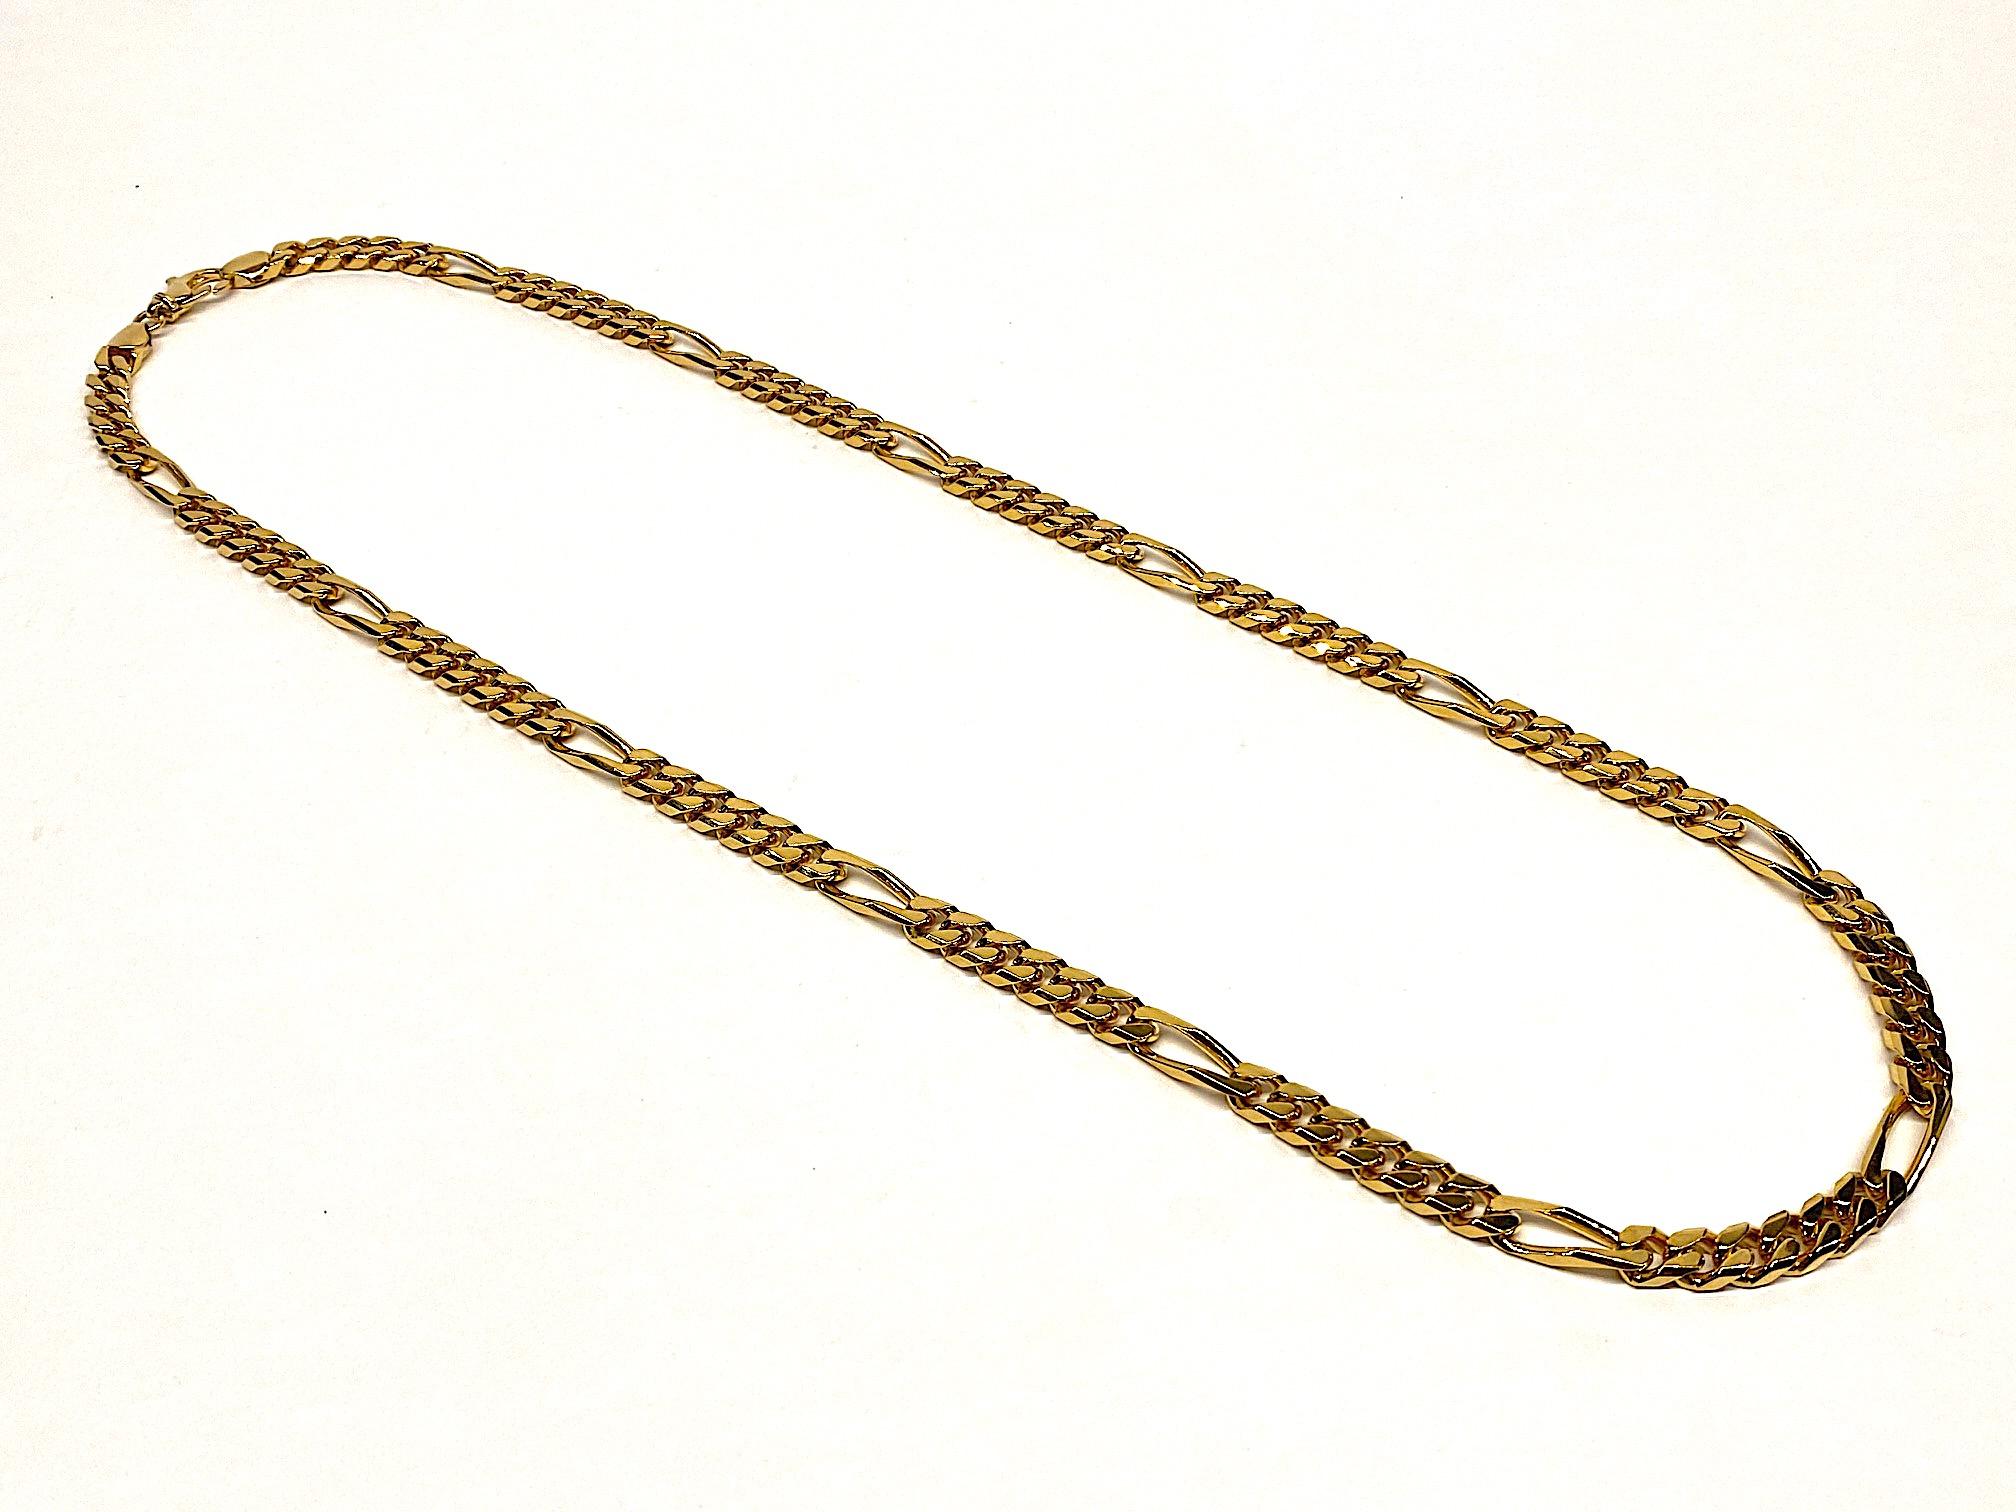 Un joli collier long en chaîne de style Figaro des années 1980 par la société italienne Bijoux Cascio. Le collier est d'un poids assez important. Il est plaqué or et mesure 35,25 pouces de long, 0,32 pouce de large et 0,19 pouce d'épaisseur. Il